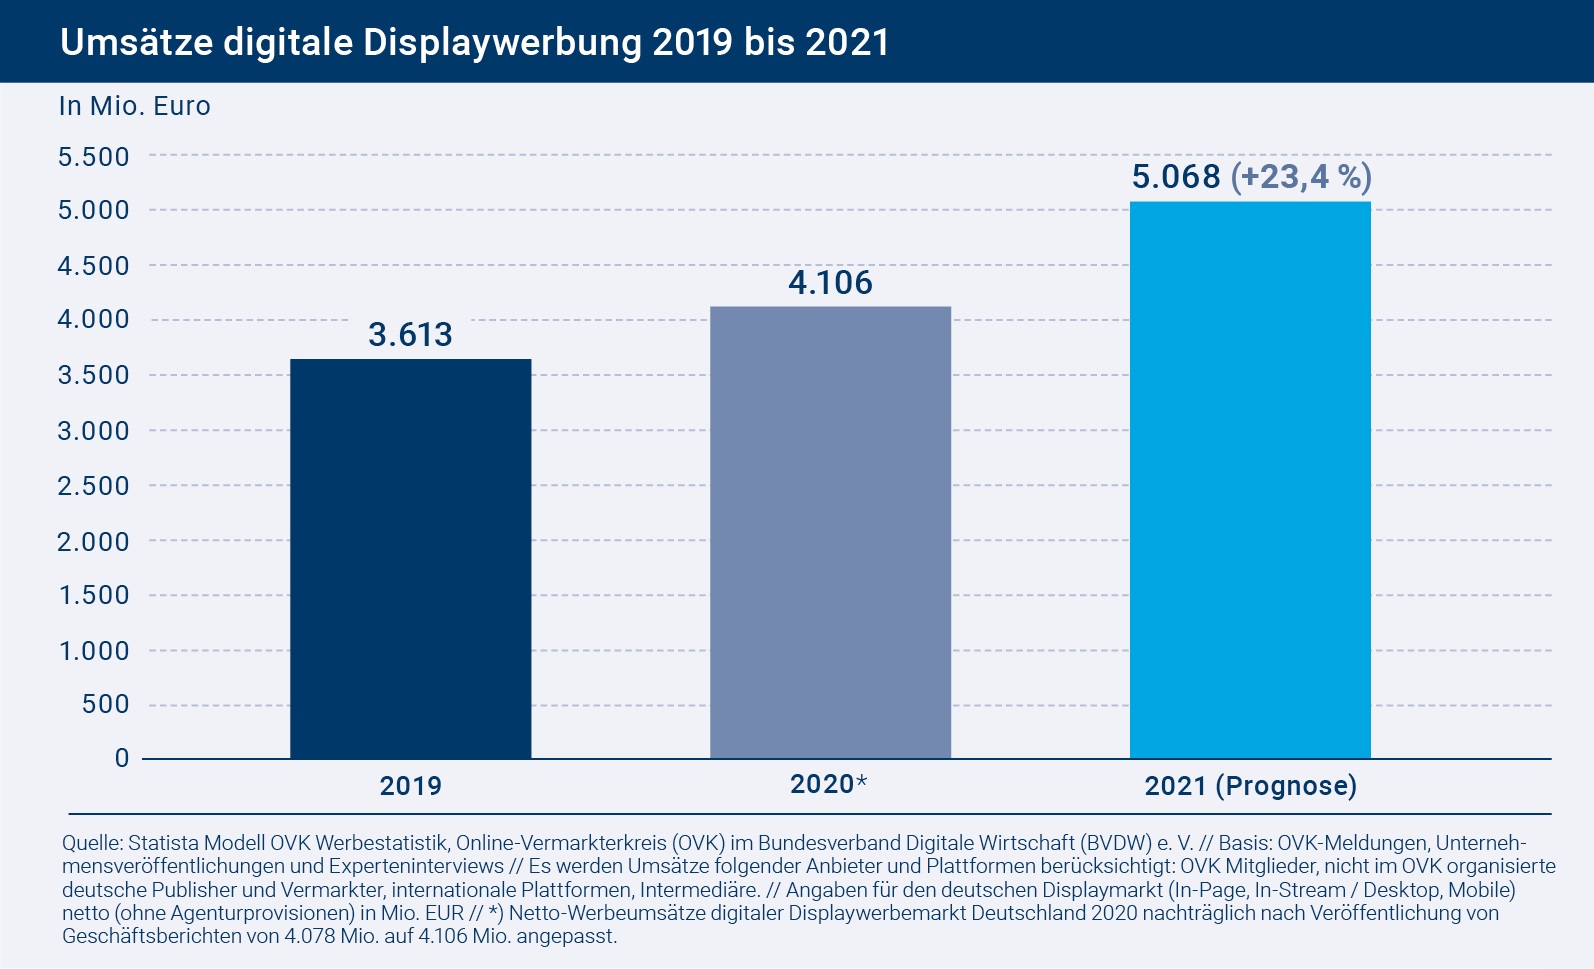 Laut OVK wchst der digitaler Displaywerbemarkt in Deutschland 2021 strker als erwartet - Foto: OVK